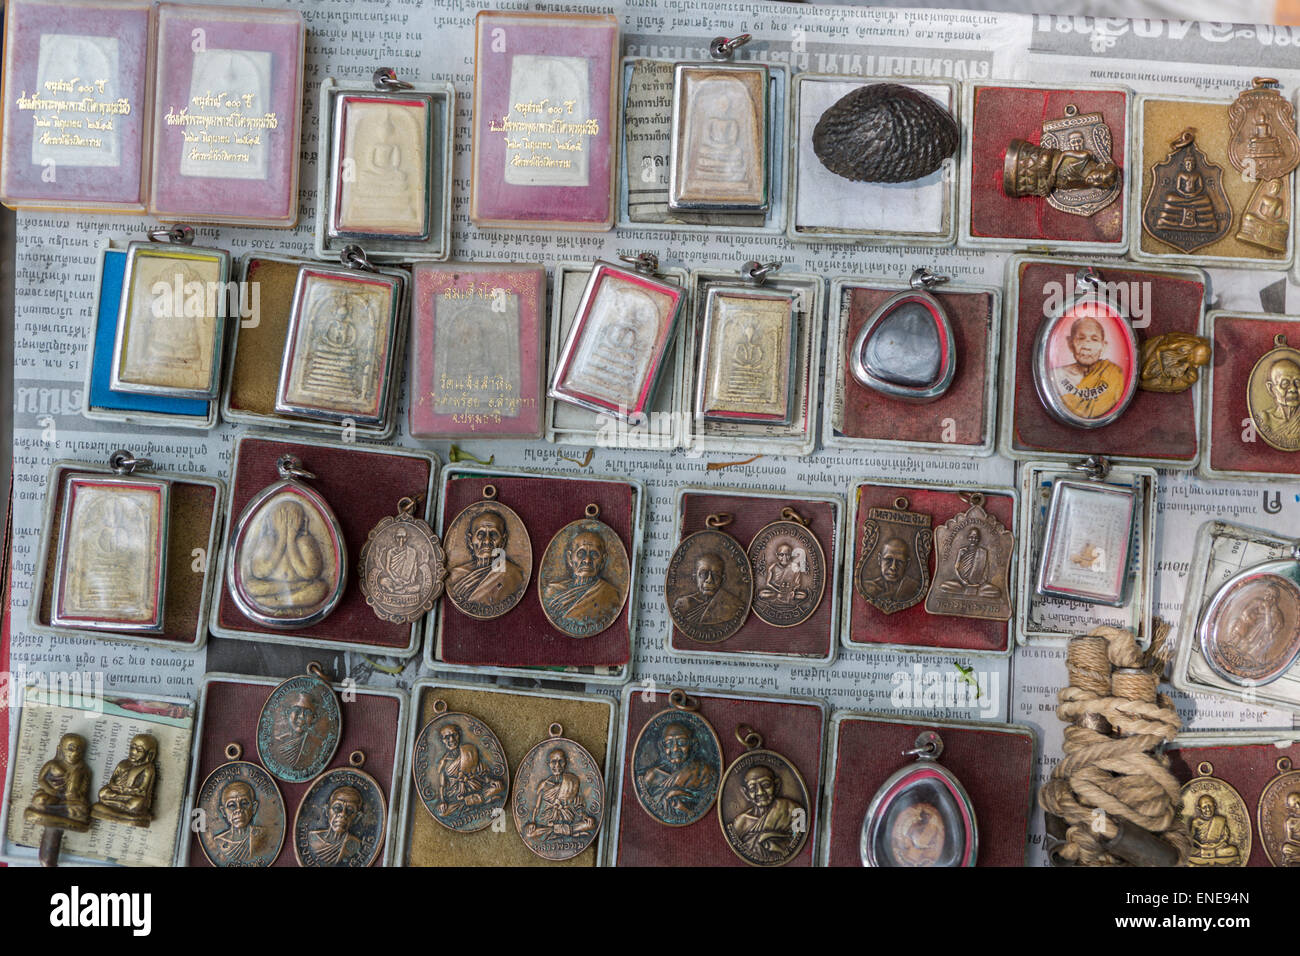 Des amulettes à l'amulette marke, Bangkok, Thailande, Asie Banque D'Images